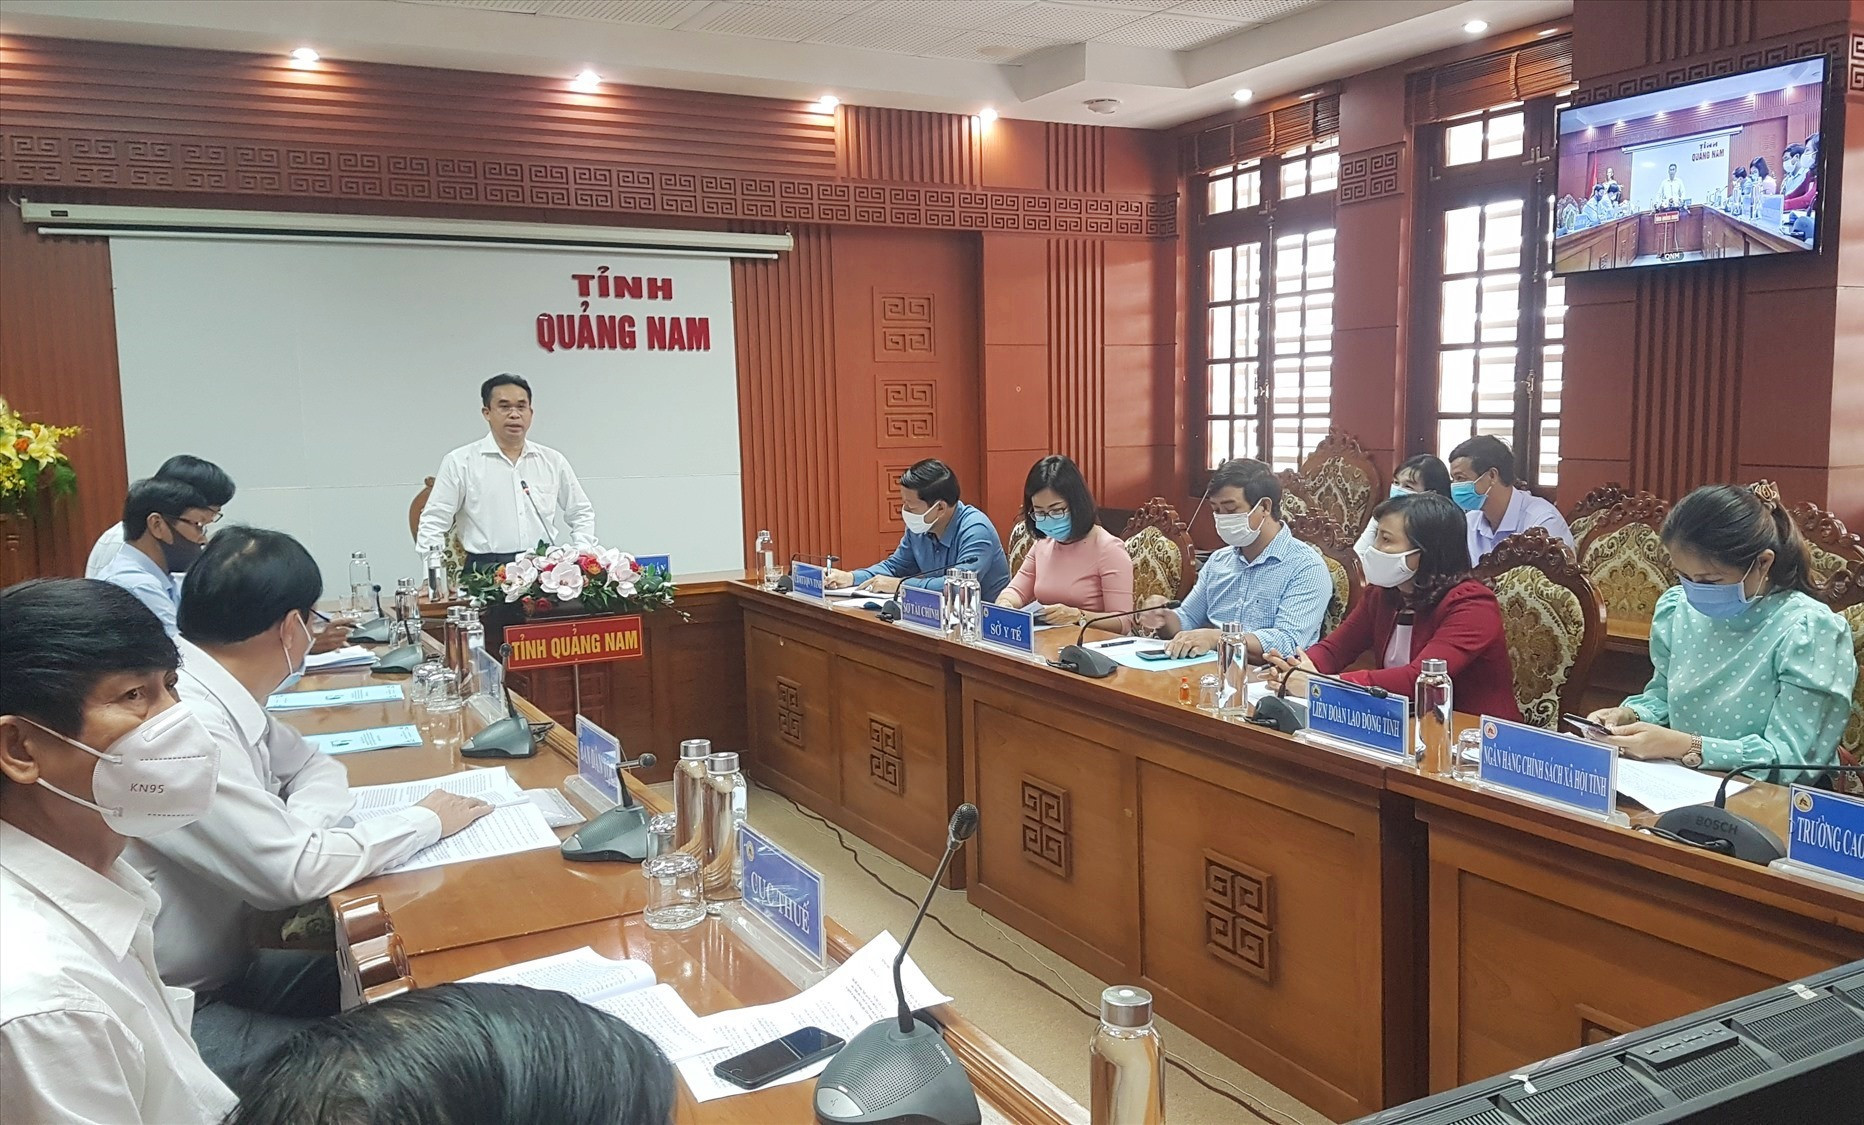 Cuộc họp trực tuyến sáng nay do Phó Chủ tịch UBND tỉnh Trần Anh Tuấn chủ trì. Ảnh: D.L